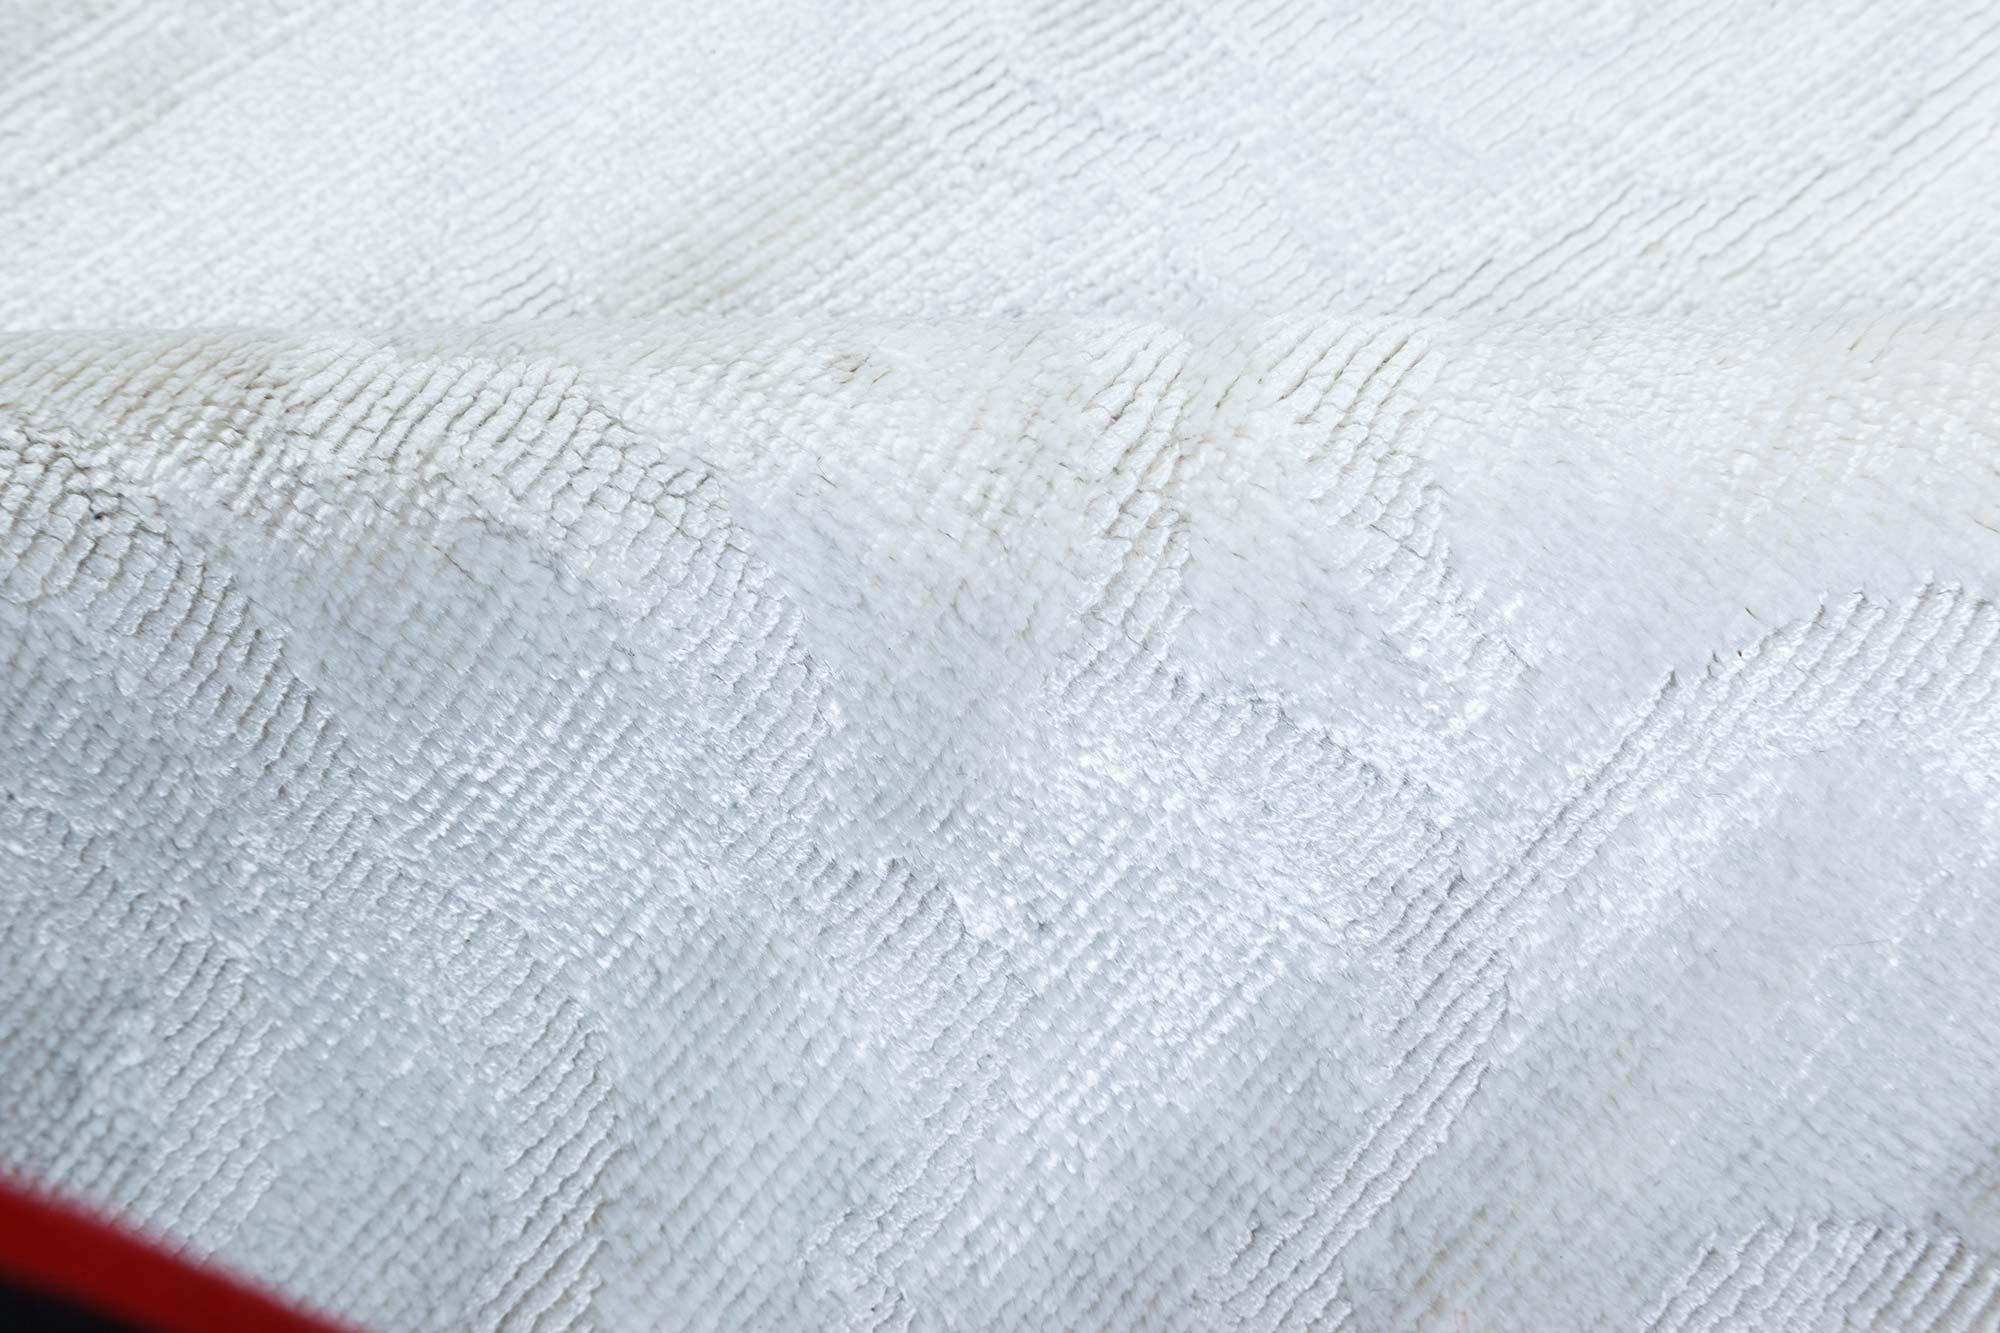 Contemporary camelia silver and white handmade silk rug by Doris Leslie Blau.
Size: 9'4